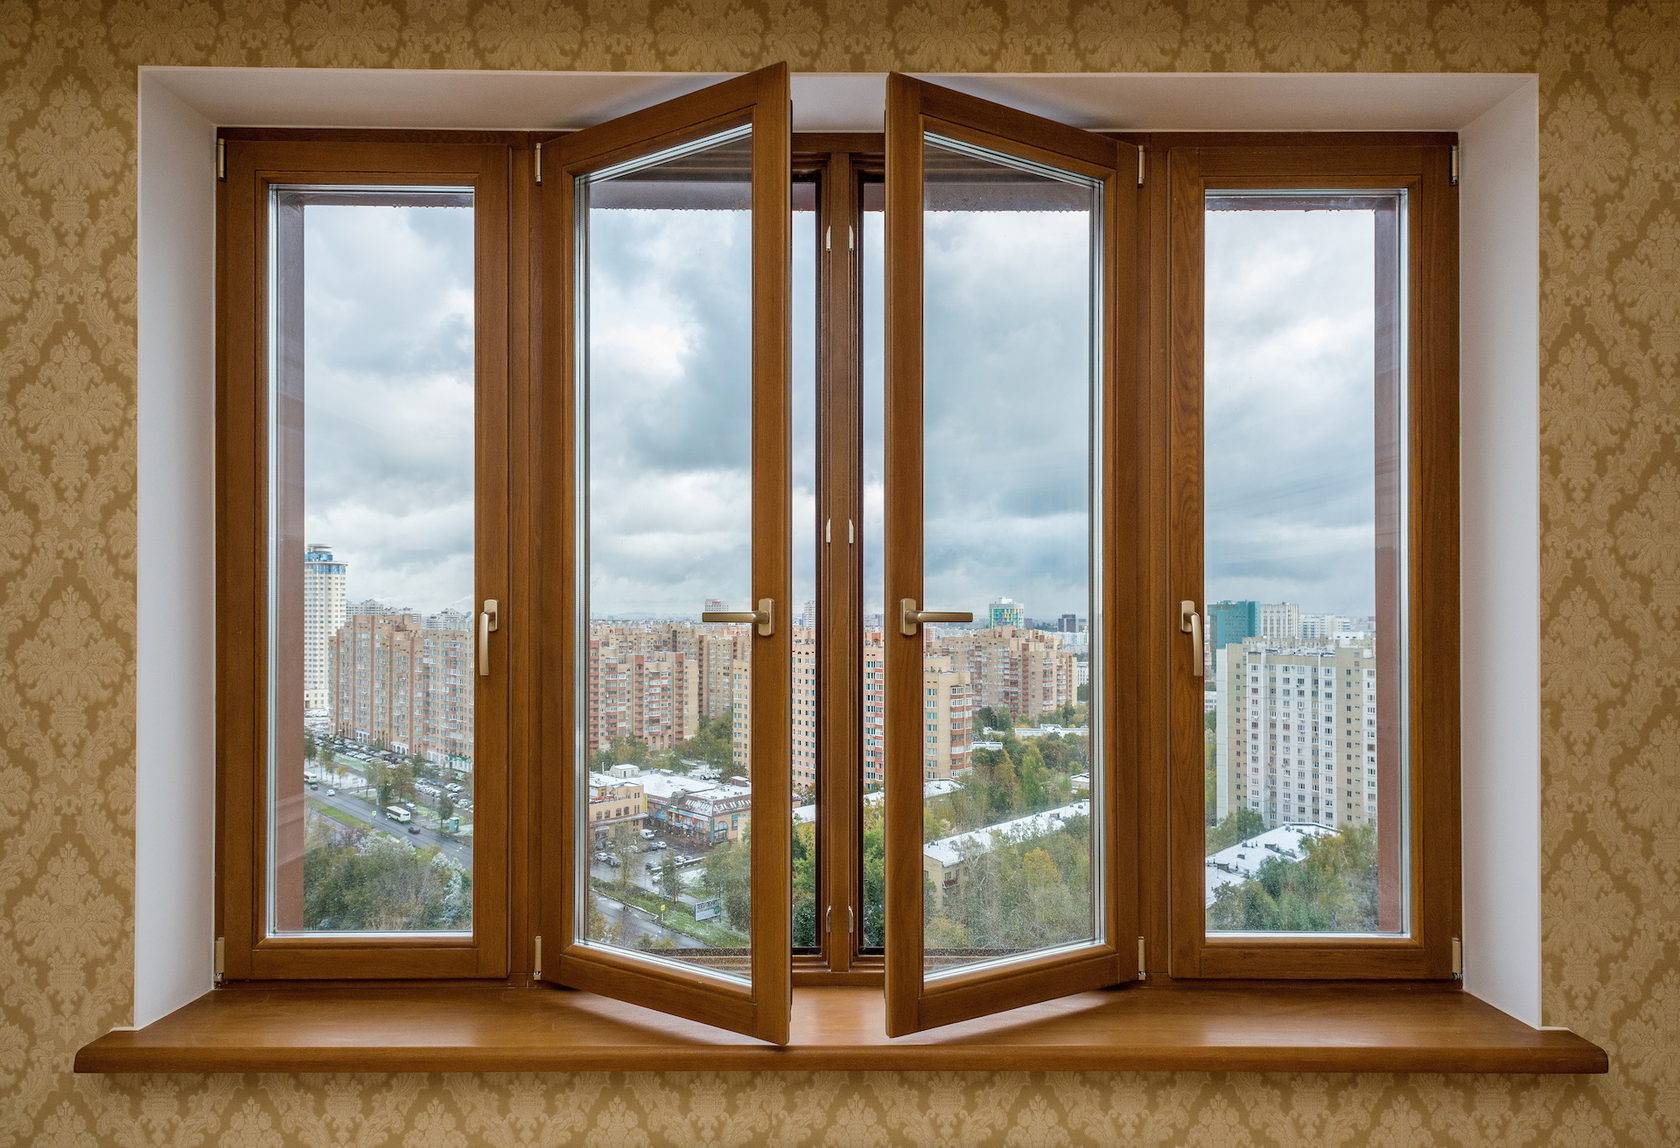 Какие окна выбрать и что лучше установить в квартире: пластик или деревянные. отзывы.